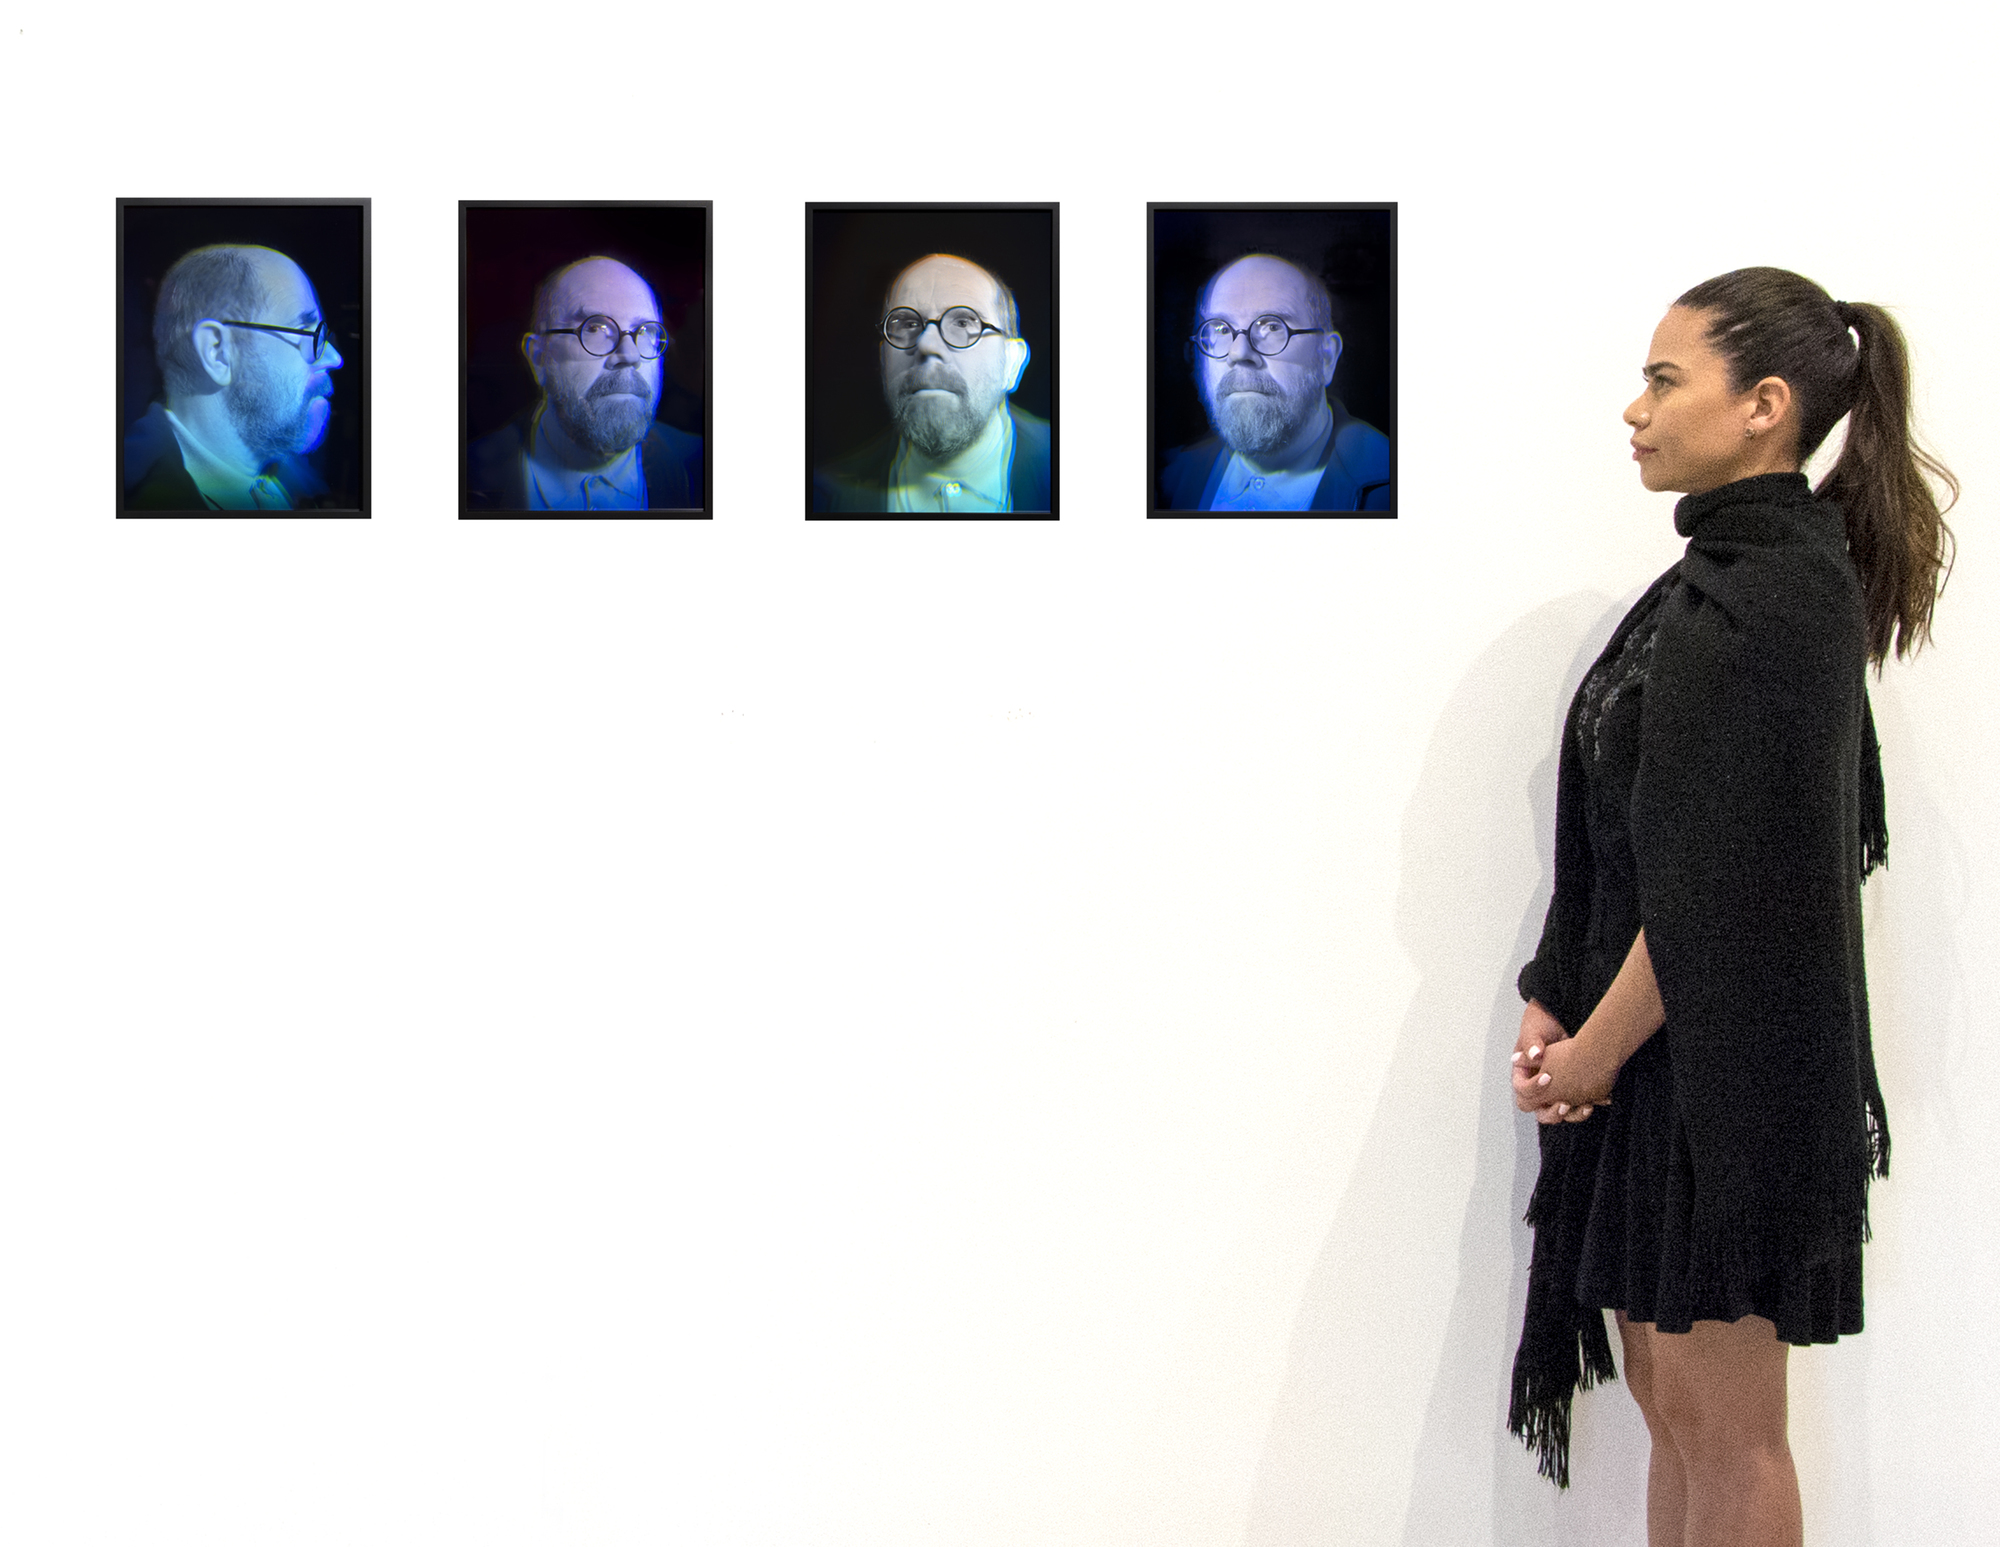 Chuck Closes Serie von vier Glashologrammen stellt eine faszinierende Überschneidung seiner anhaltenden Erforschung des Selbstporträts und seines Interesses an innovativen künstlerischen Medien dar. Das Selbstporträt ist ein Eckpfeiler in Closes Schaffen, der es ihm ermöglicht, sich tief in die Feinheiten der menschlichen Identität und des künstlerischen Schaffensprozesses zu vertiefen. Die Hologramme verändern sich mit der Position des Betrachters und schaffen eine dynamische Erfahrung, die an Close&#039; verpixelte Werke erinnert, jedoch mit einer zusätzlichen physischen Präsenz. Holography zeigt das Engagement des Künstlers, seine künstlerische Sprache weiterzuentwickeln, indem er die traditionelle Porträtmalerei geschickt mit modernen technologischen Fortschritten kombiniert, um die Grenzen der visuellen Repräsentation immer wieder herauszufordern und neu zu definieren.